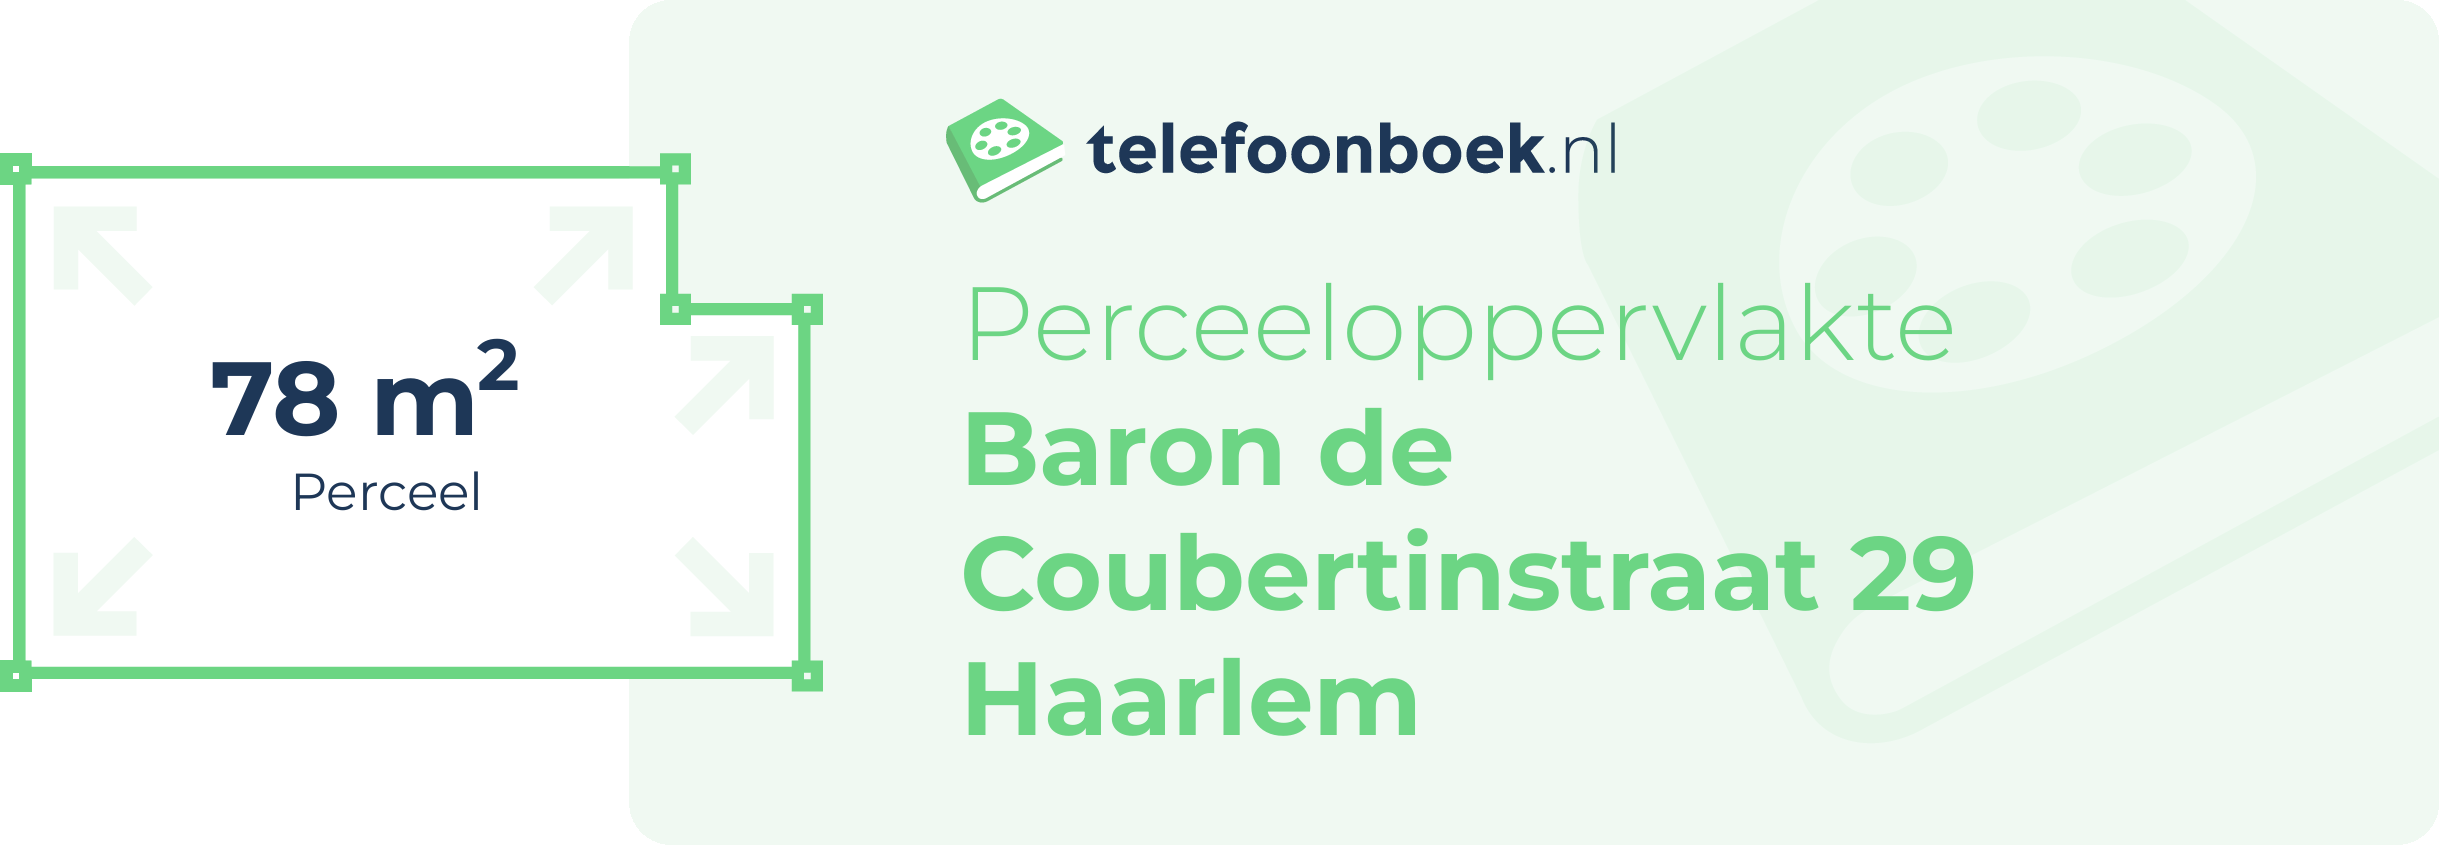 Perceeloppervlakte Baron De Coubertinstraat 29 Haarlem